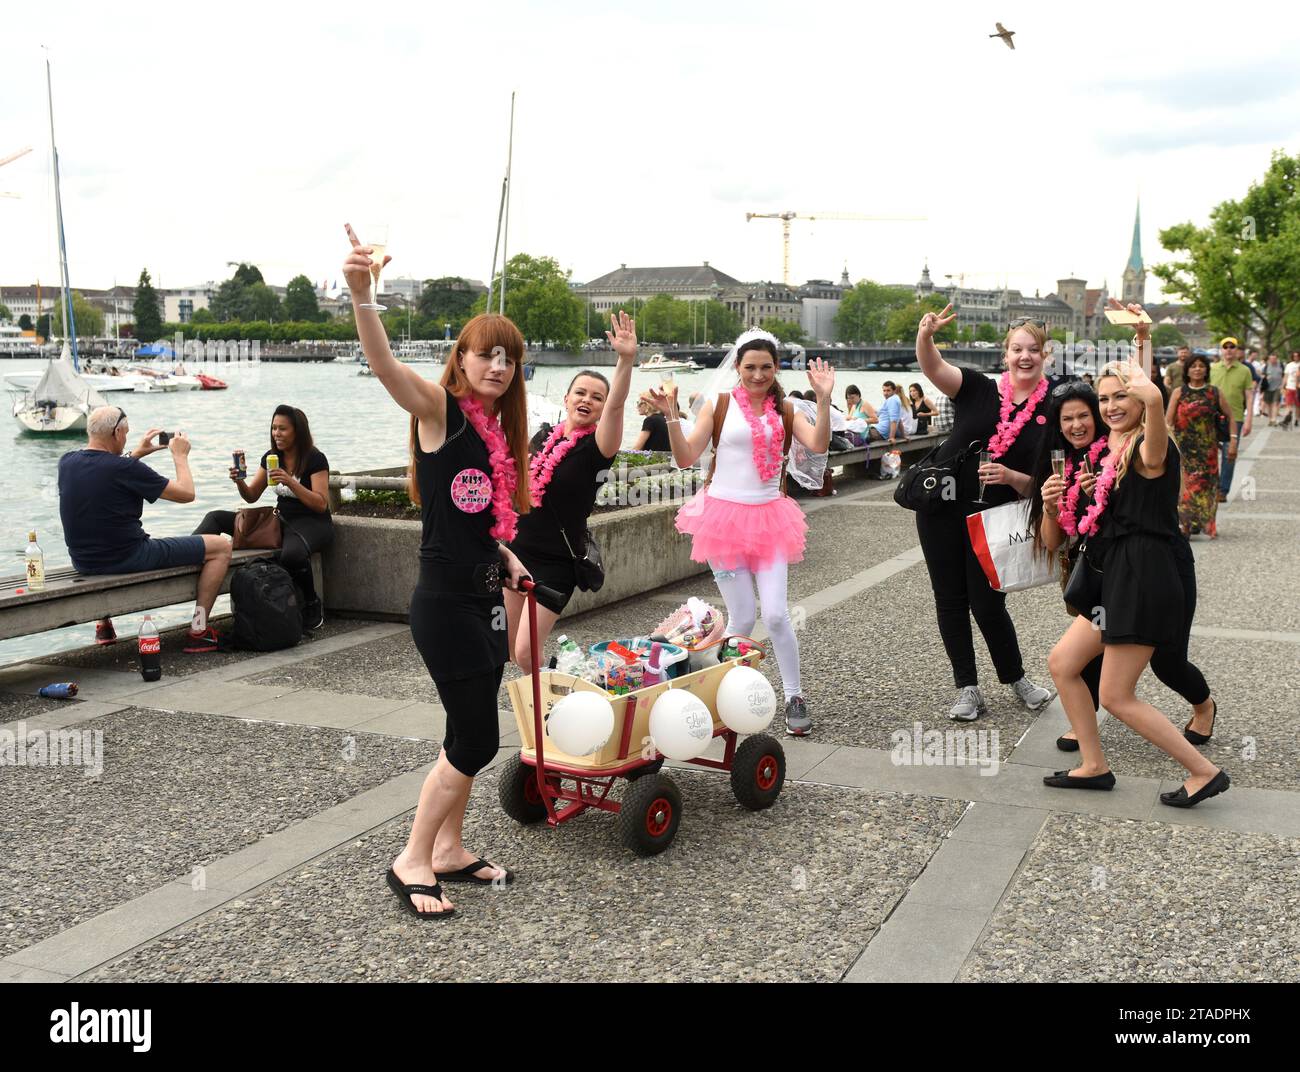 Zurich, Suisse - 03 juin 2017 : les filles célèbrent une fête de mariée de bachelorette (fête de la jeune fille) sur la promenade du lac de Zurich. Banque D'Images